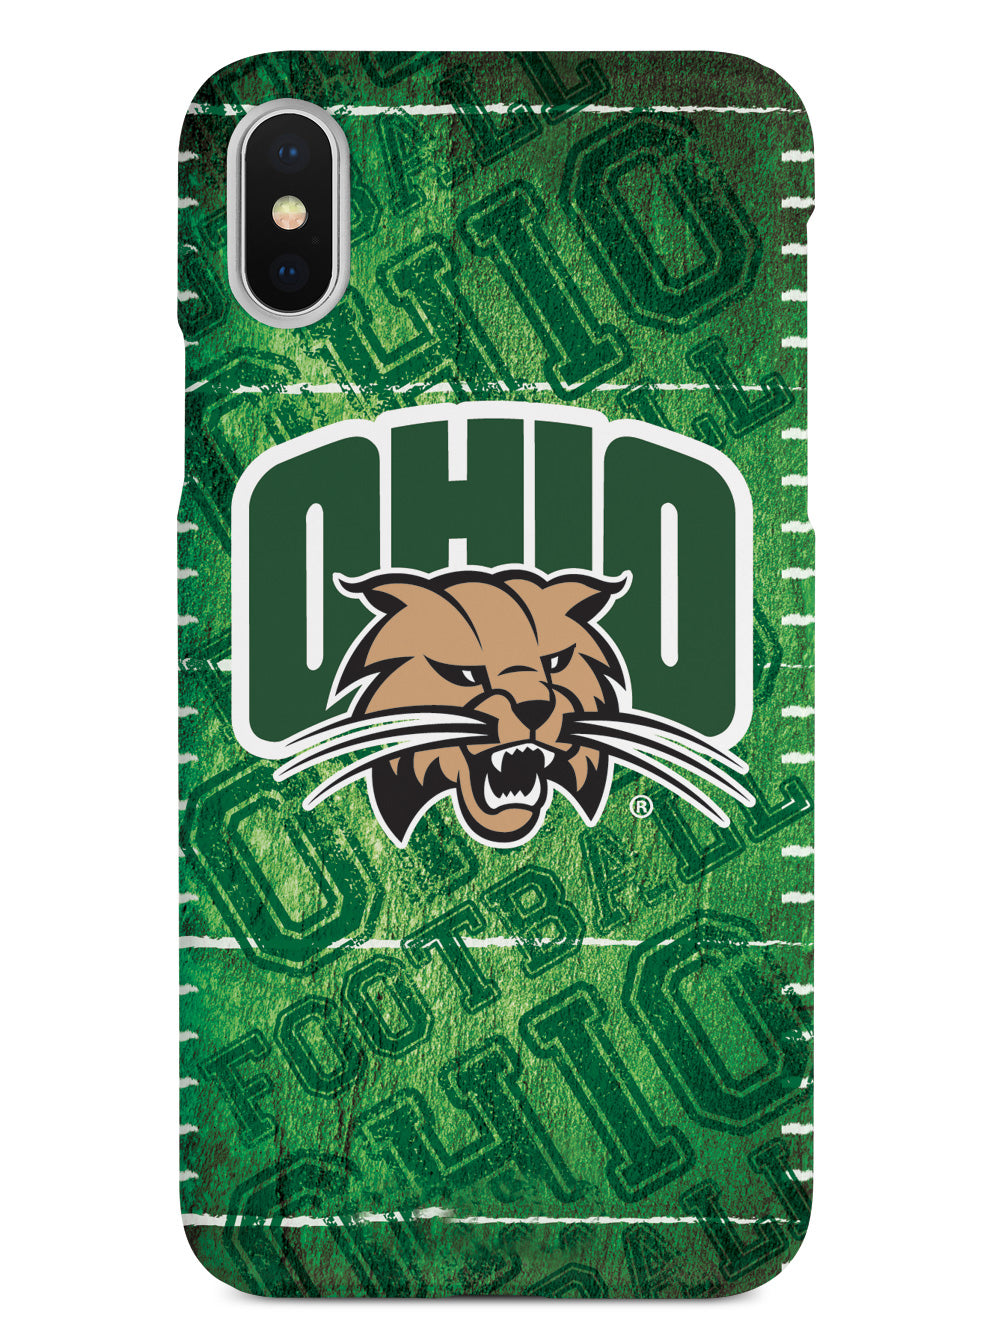 Ohio University Bobcats - Football Case